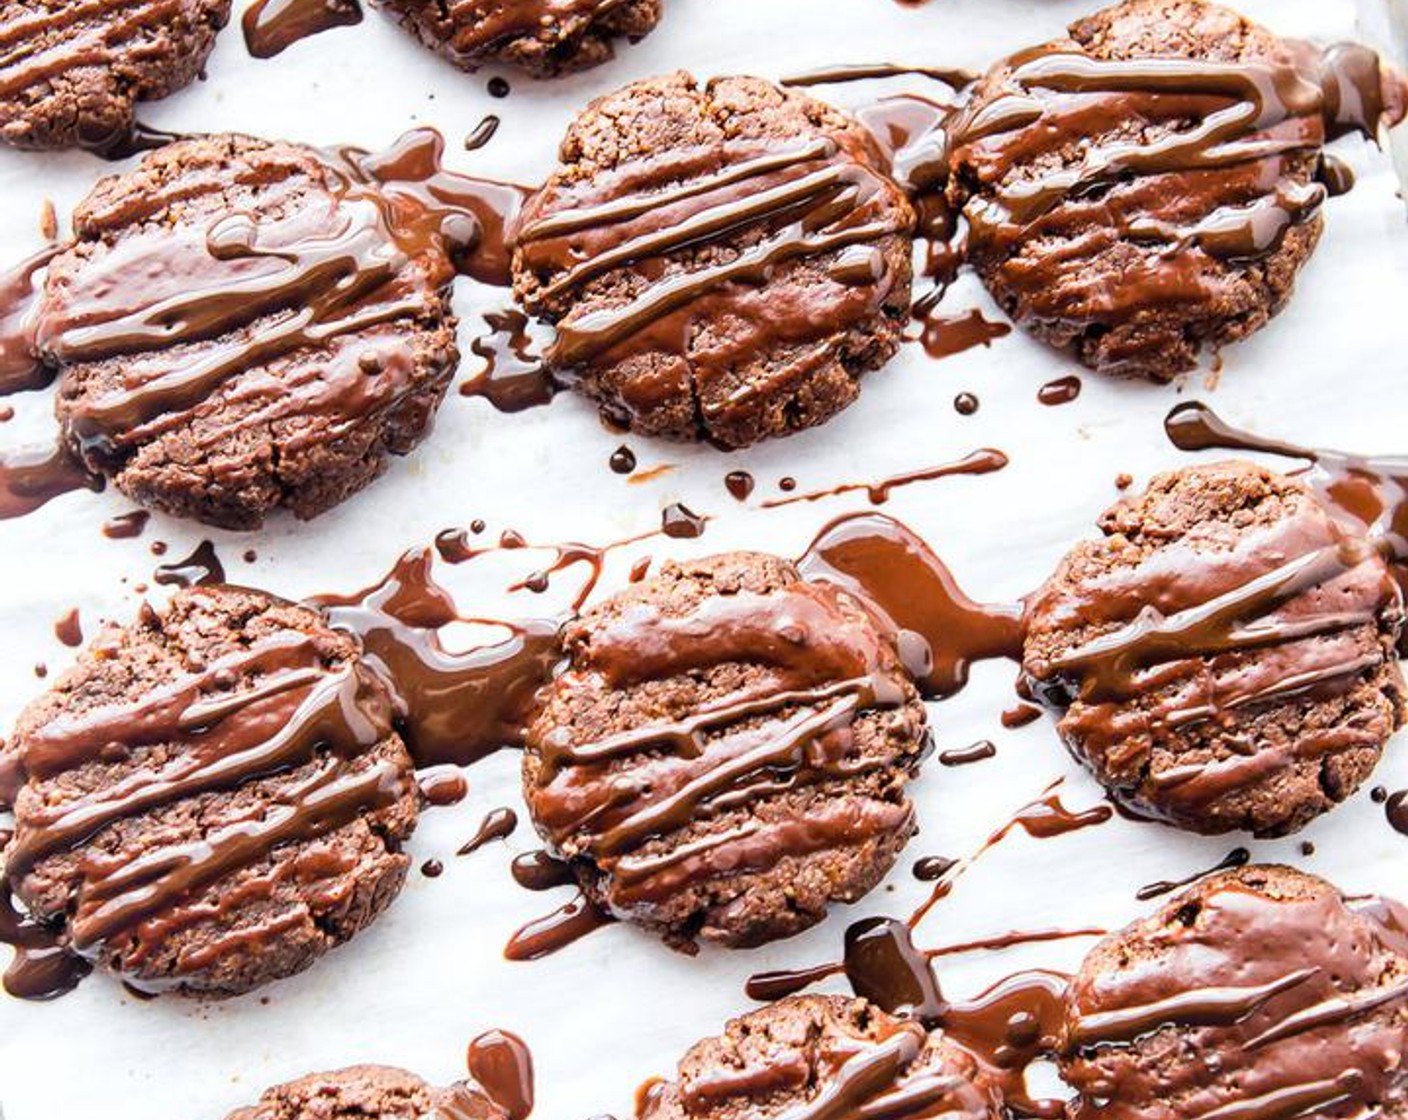 Schritt 7 Während die Kekse abkühlen, zusätzliche dunkle Schokolade (wenig) schmelzen. Anschliessend die dunkle Schokolade über die Cookies träufeln und mit Haselnüssen (wenig) bestreuen.